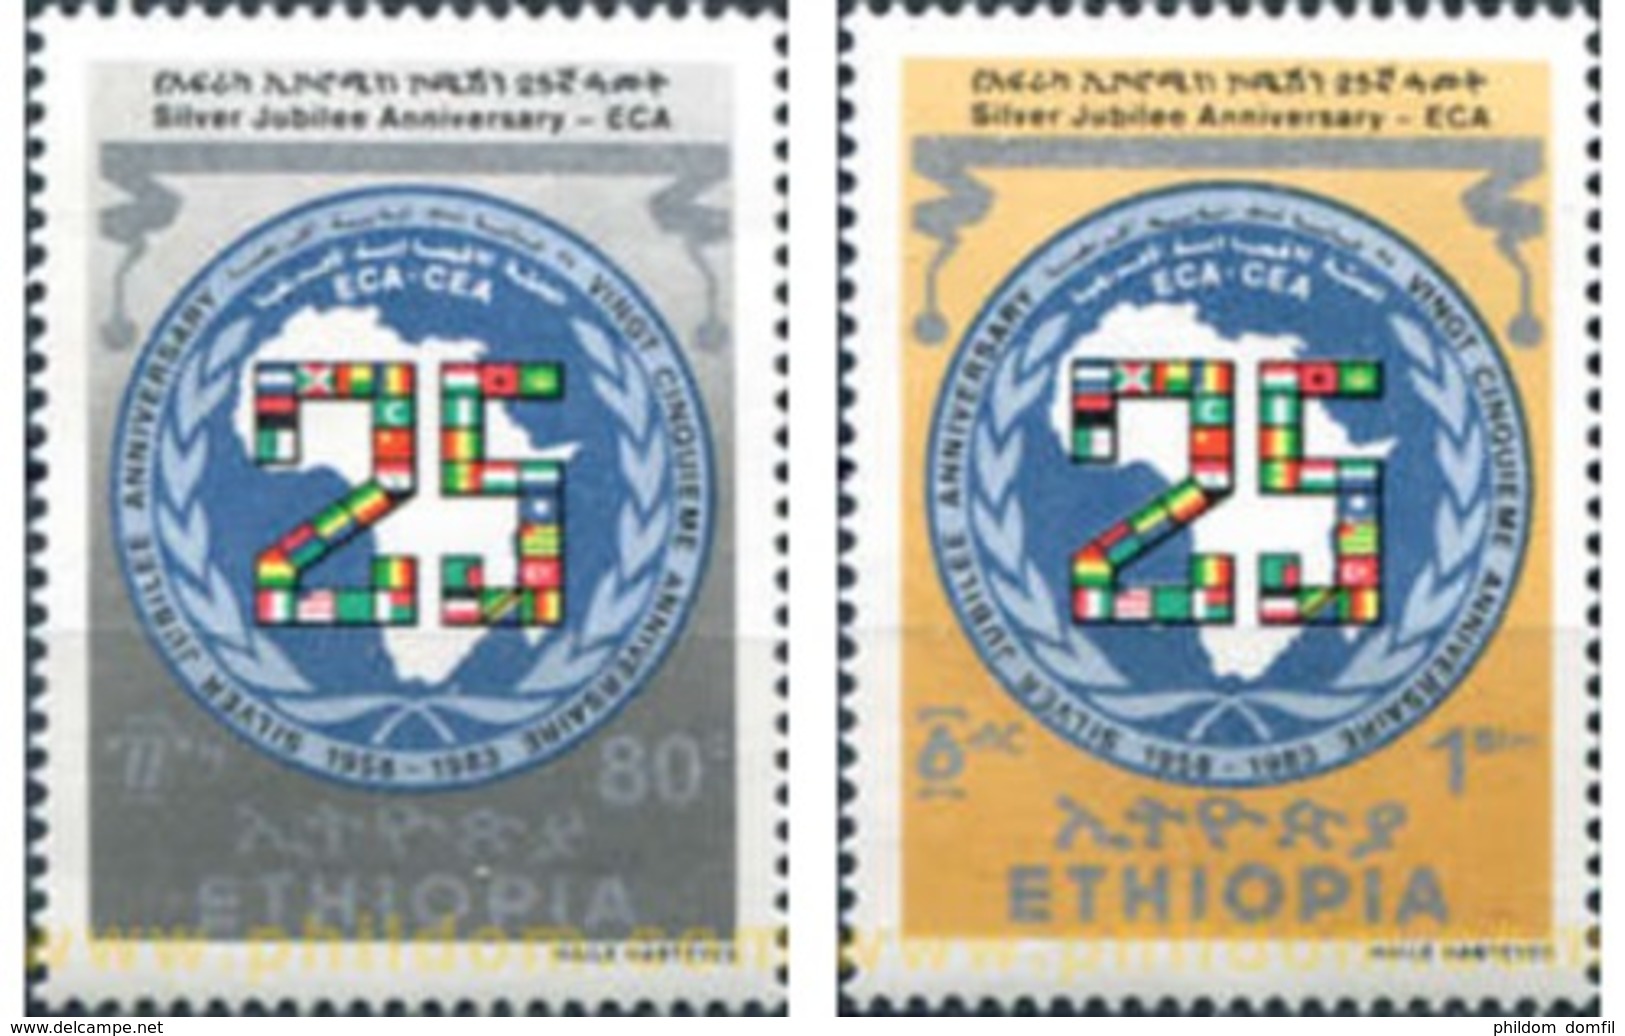 Ref. 312103 * MNH * - ETHIOPIA. 1983. 25 ANIVERSARIO DE LA COMISION AFRICANA - Ethiopie